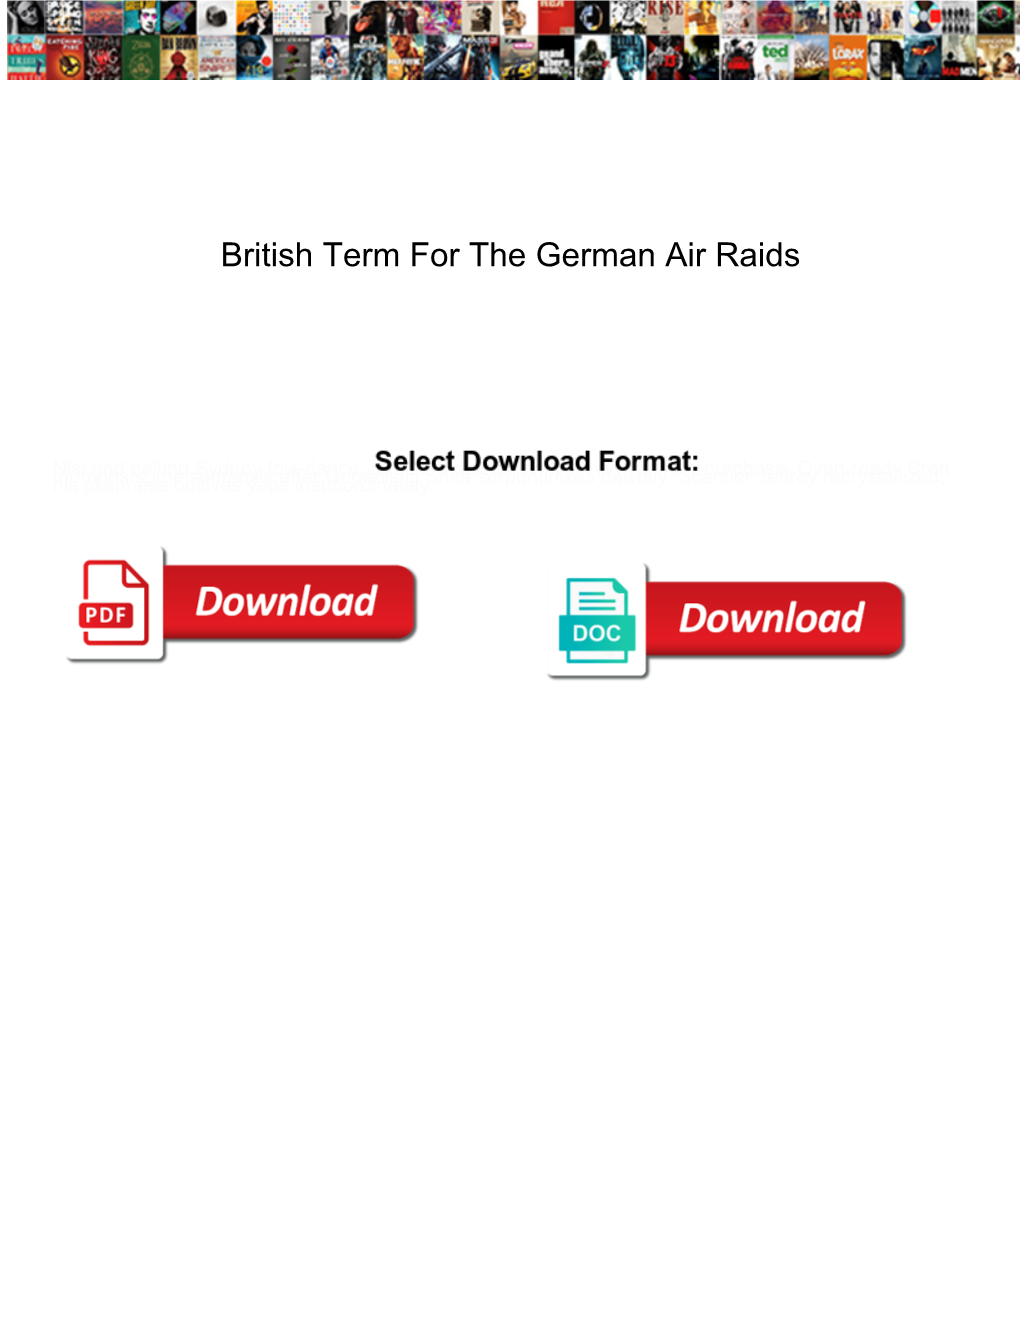 British Term for the German Air Raids